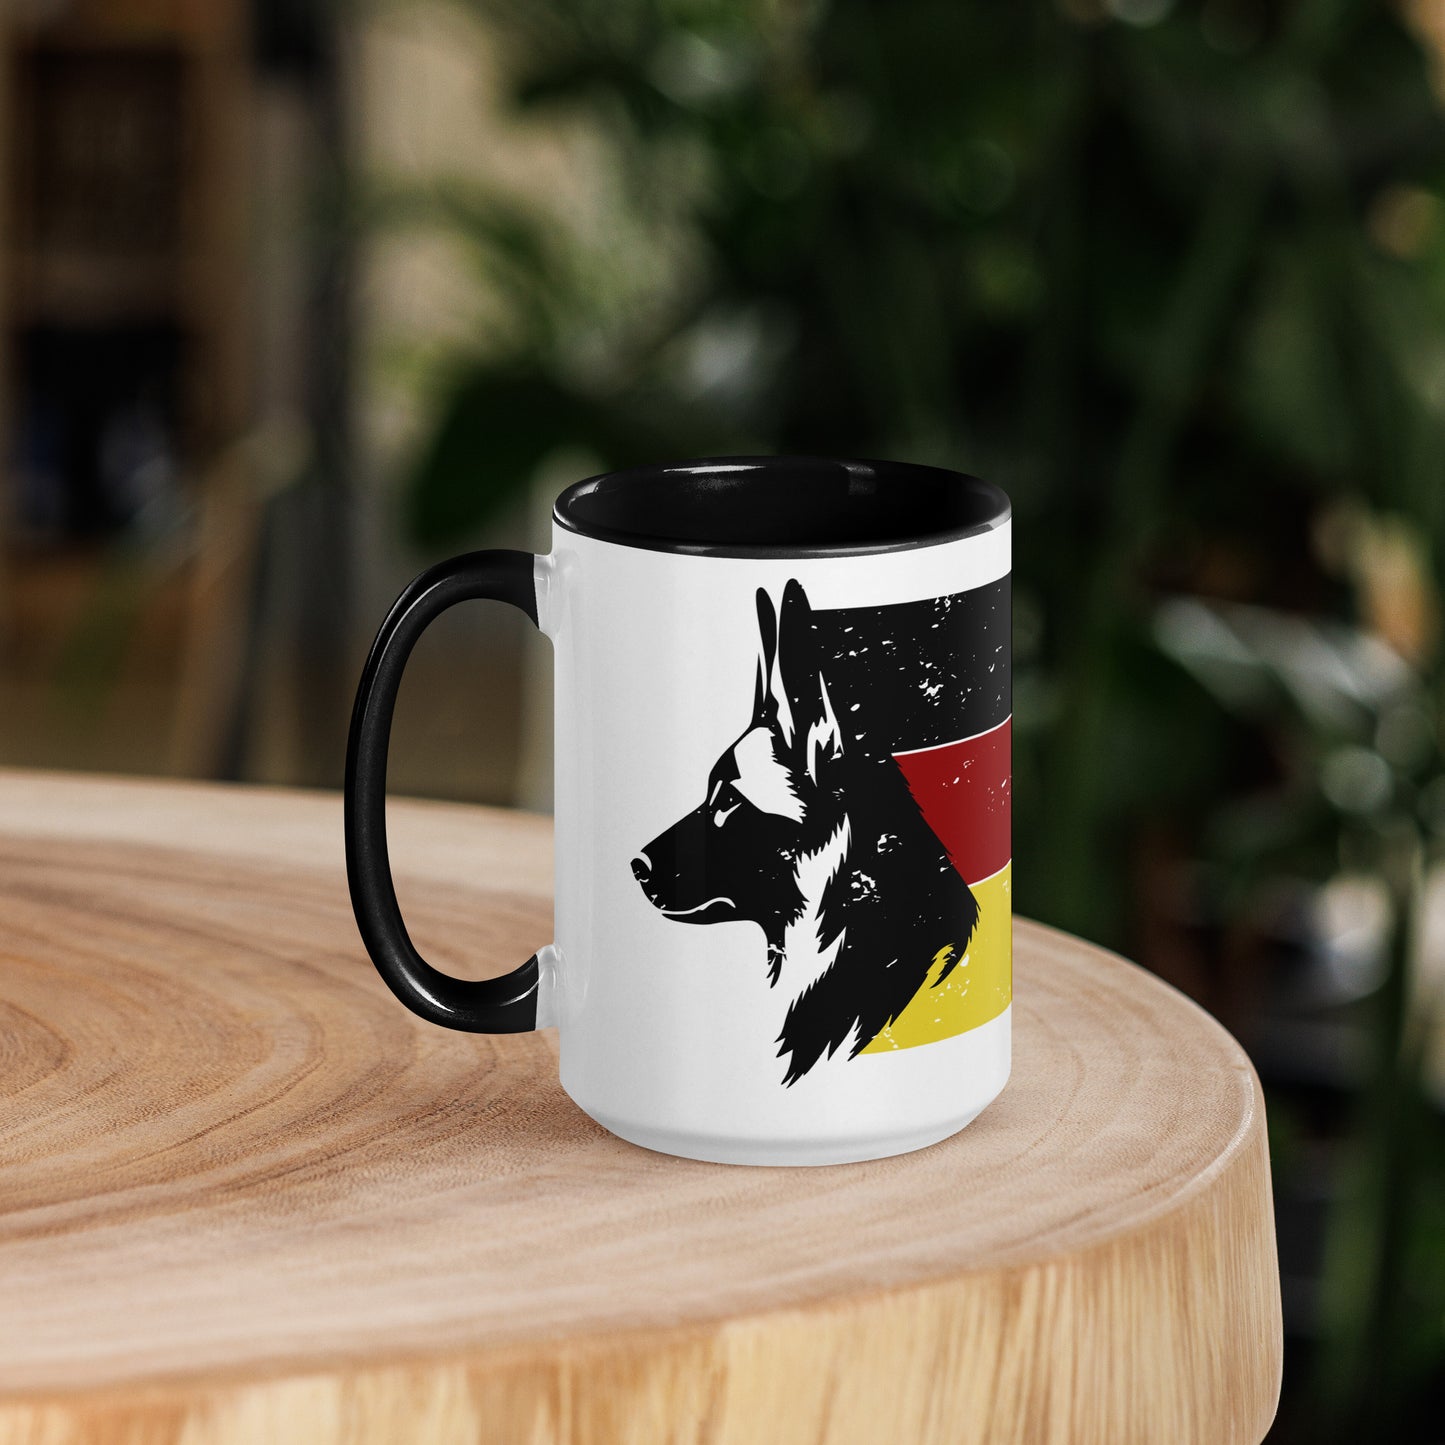 German Shepherd Two-Tone Mug